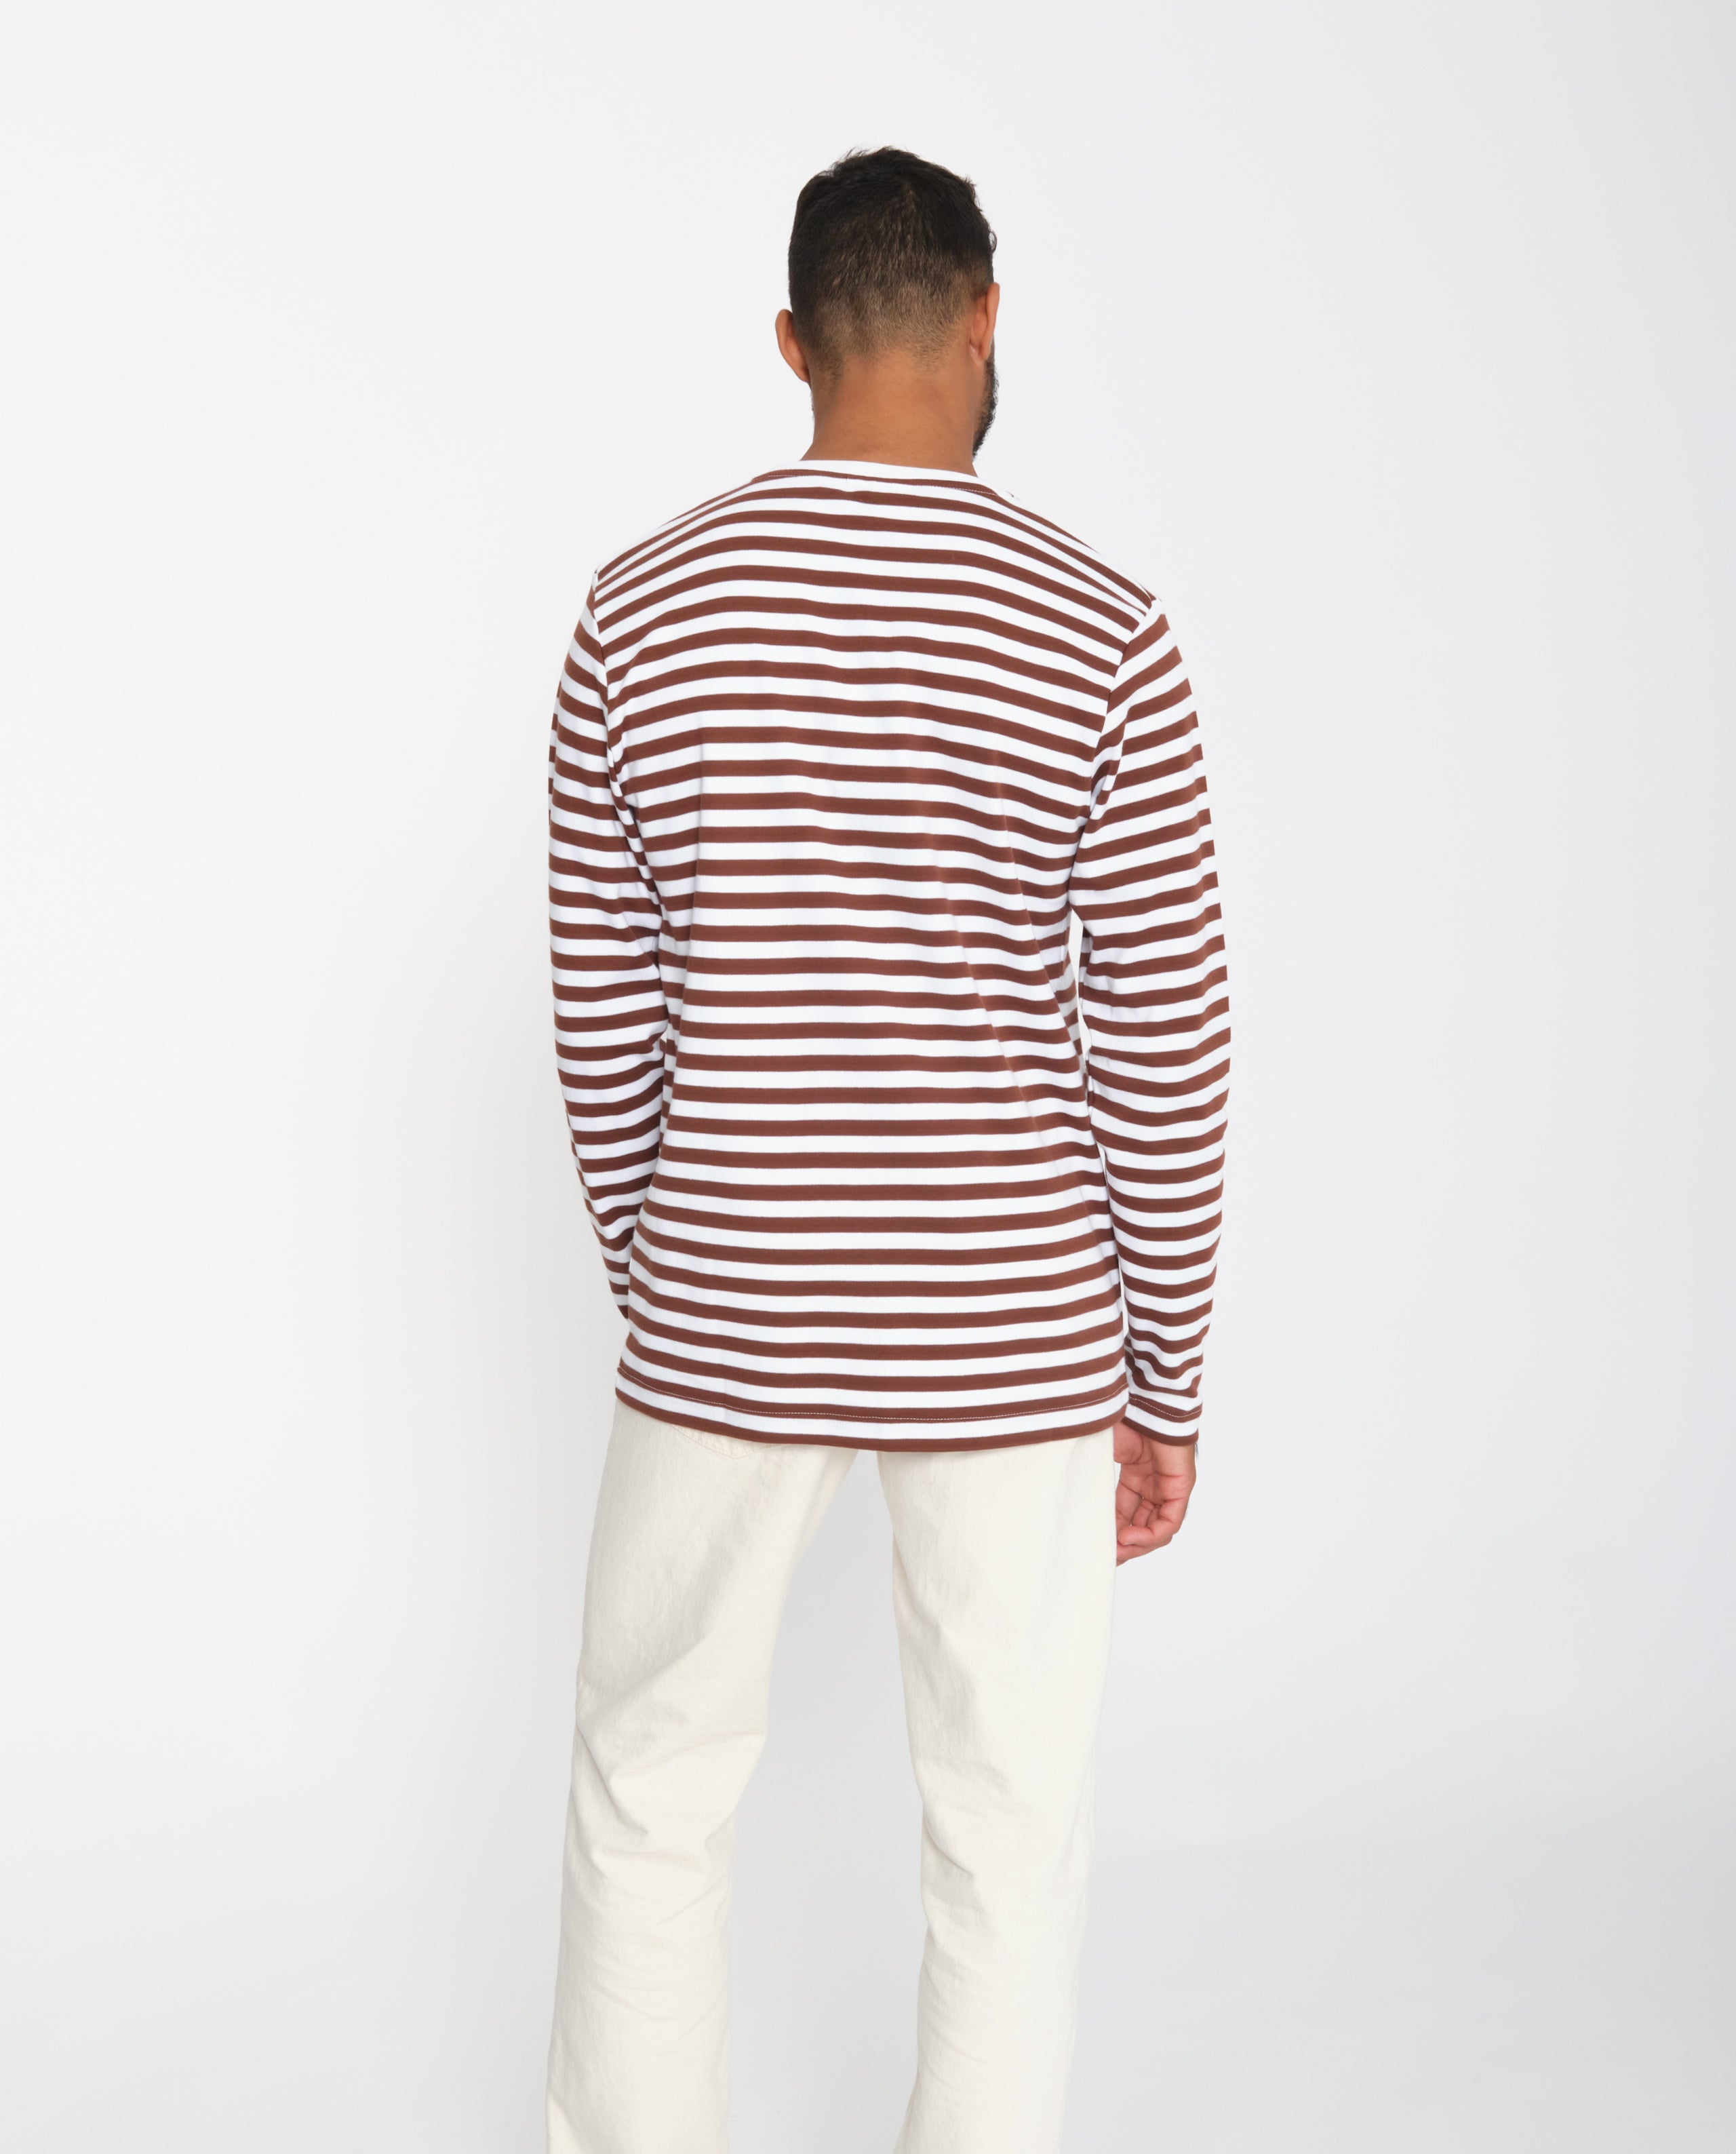 marché commun makia clothing t-shirt homme manches longues mariniere coton biologique marron blanc